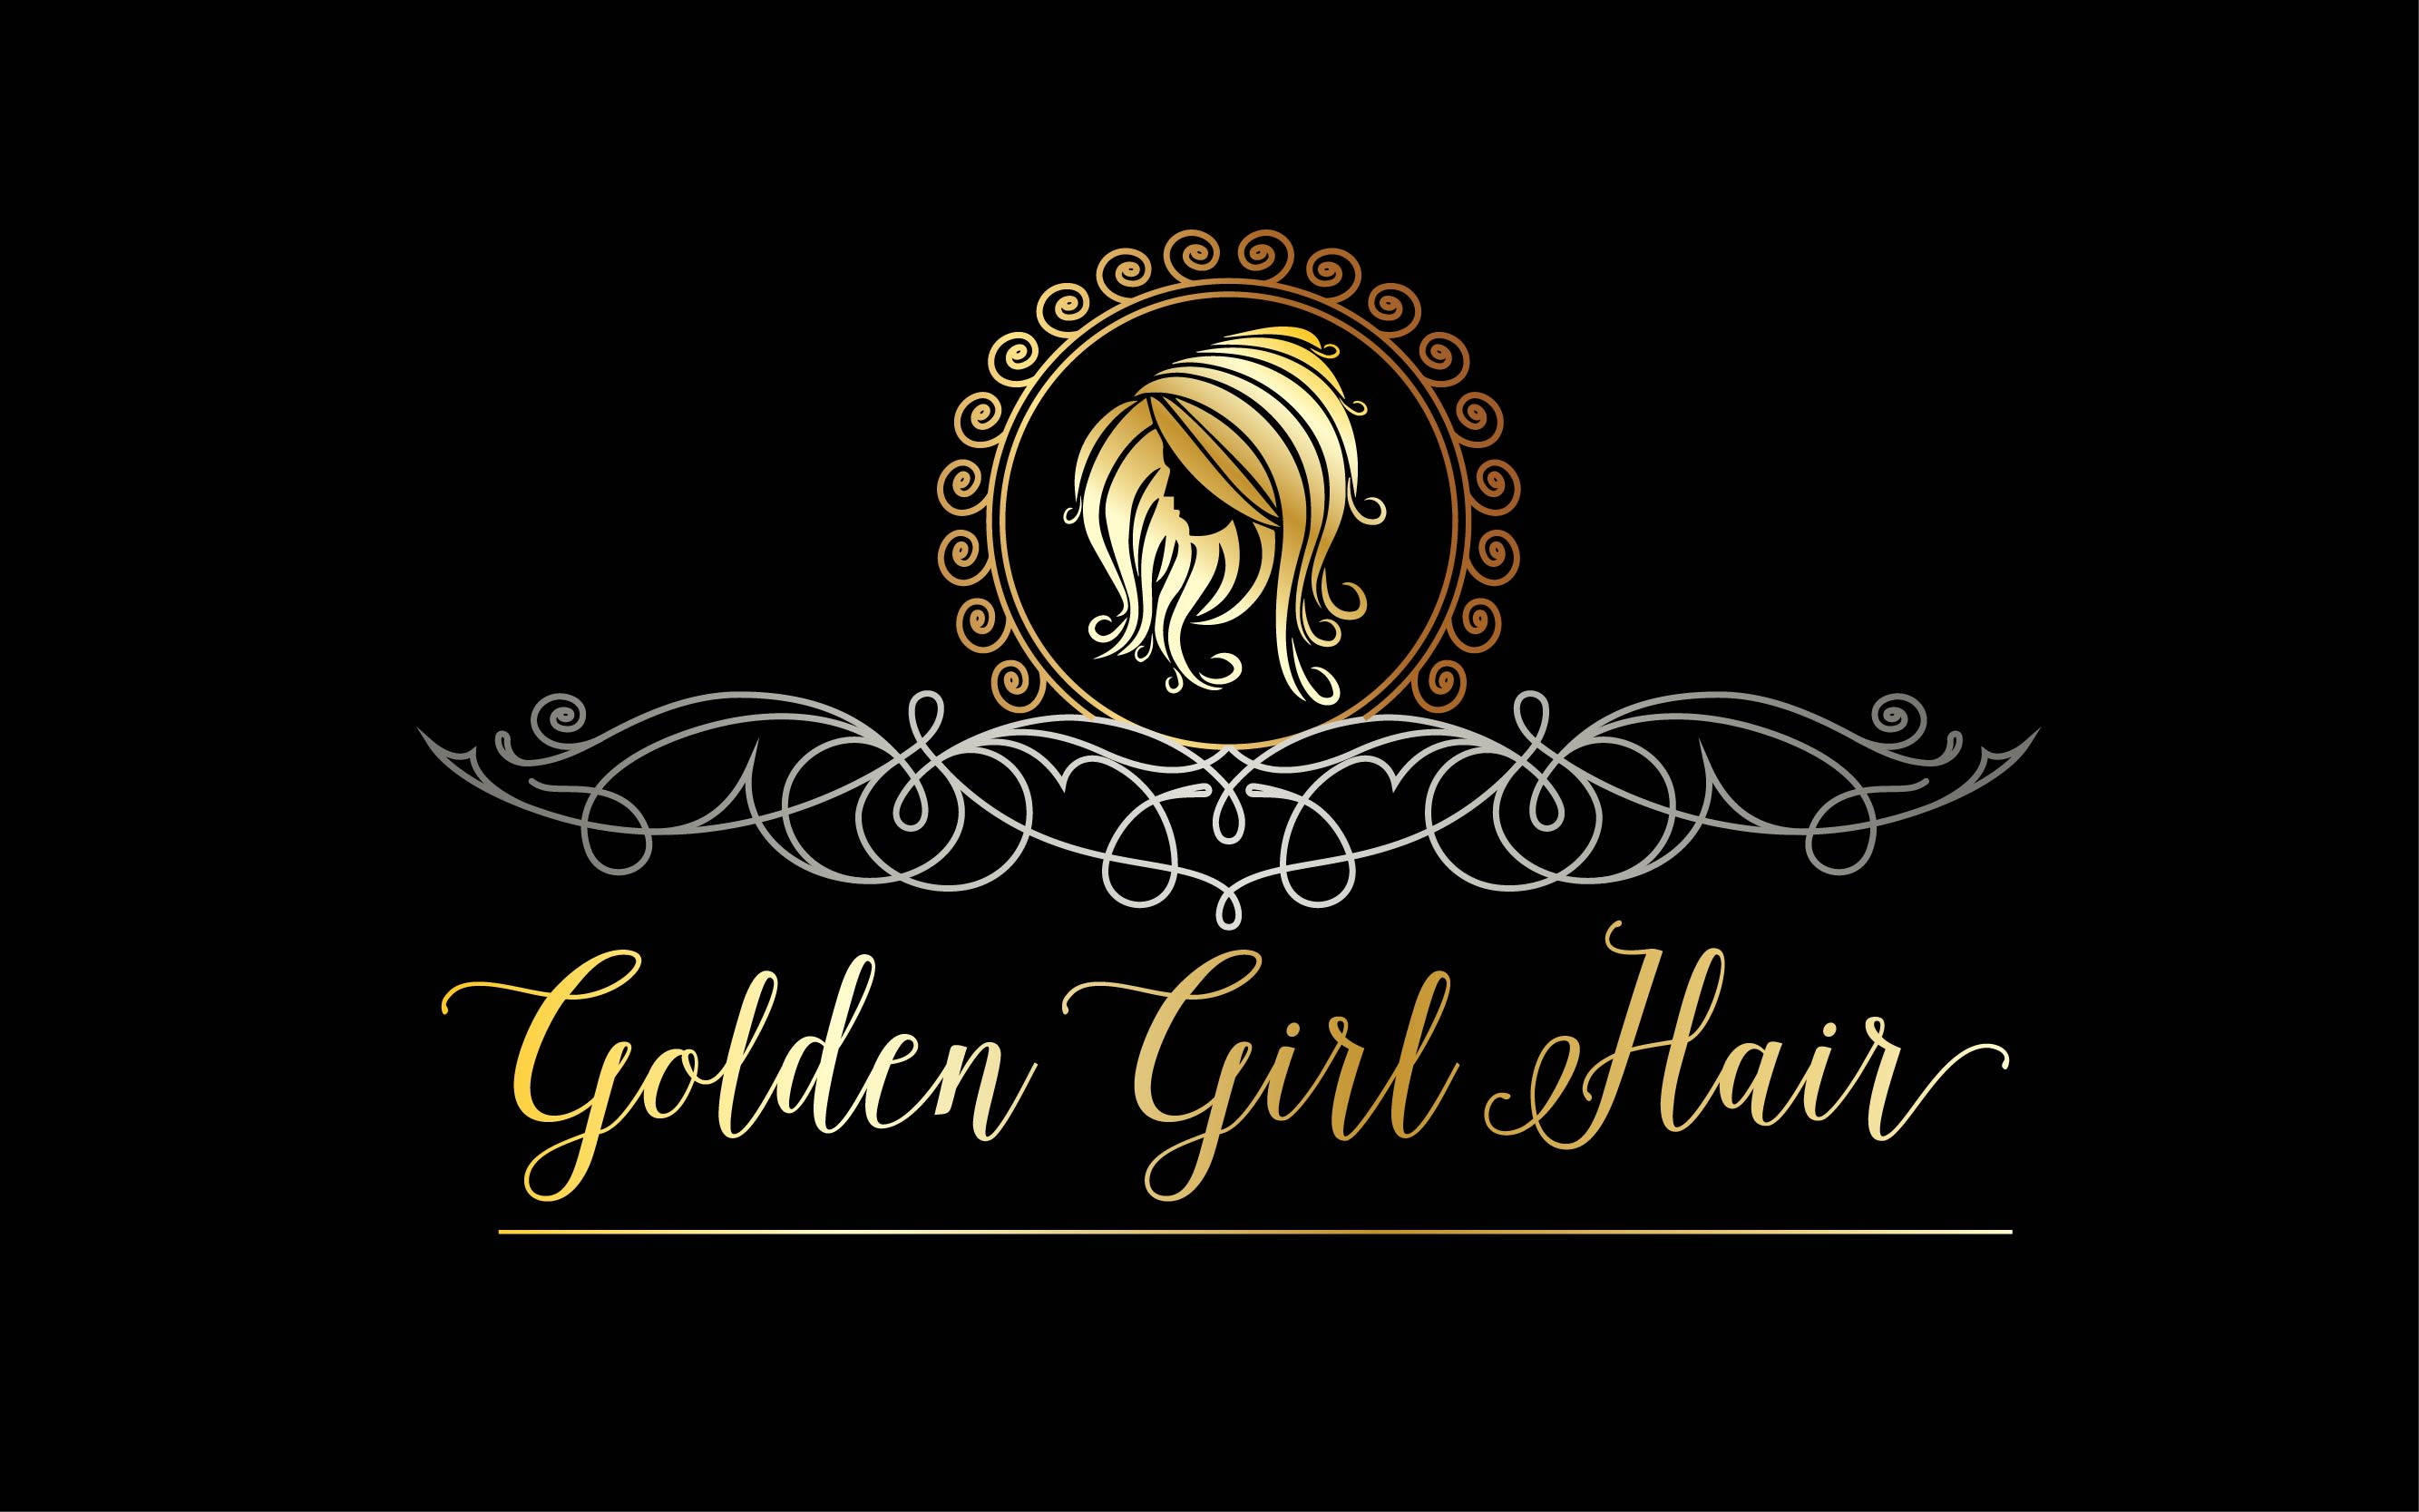 Golden Girl Hair